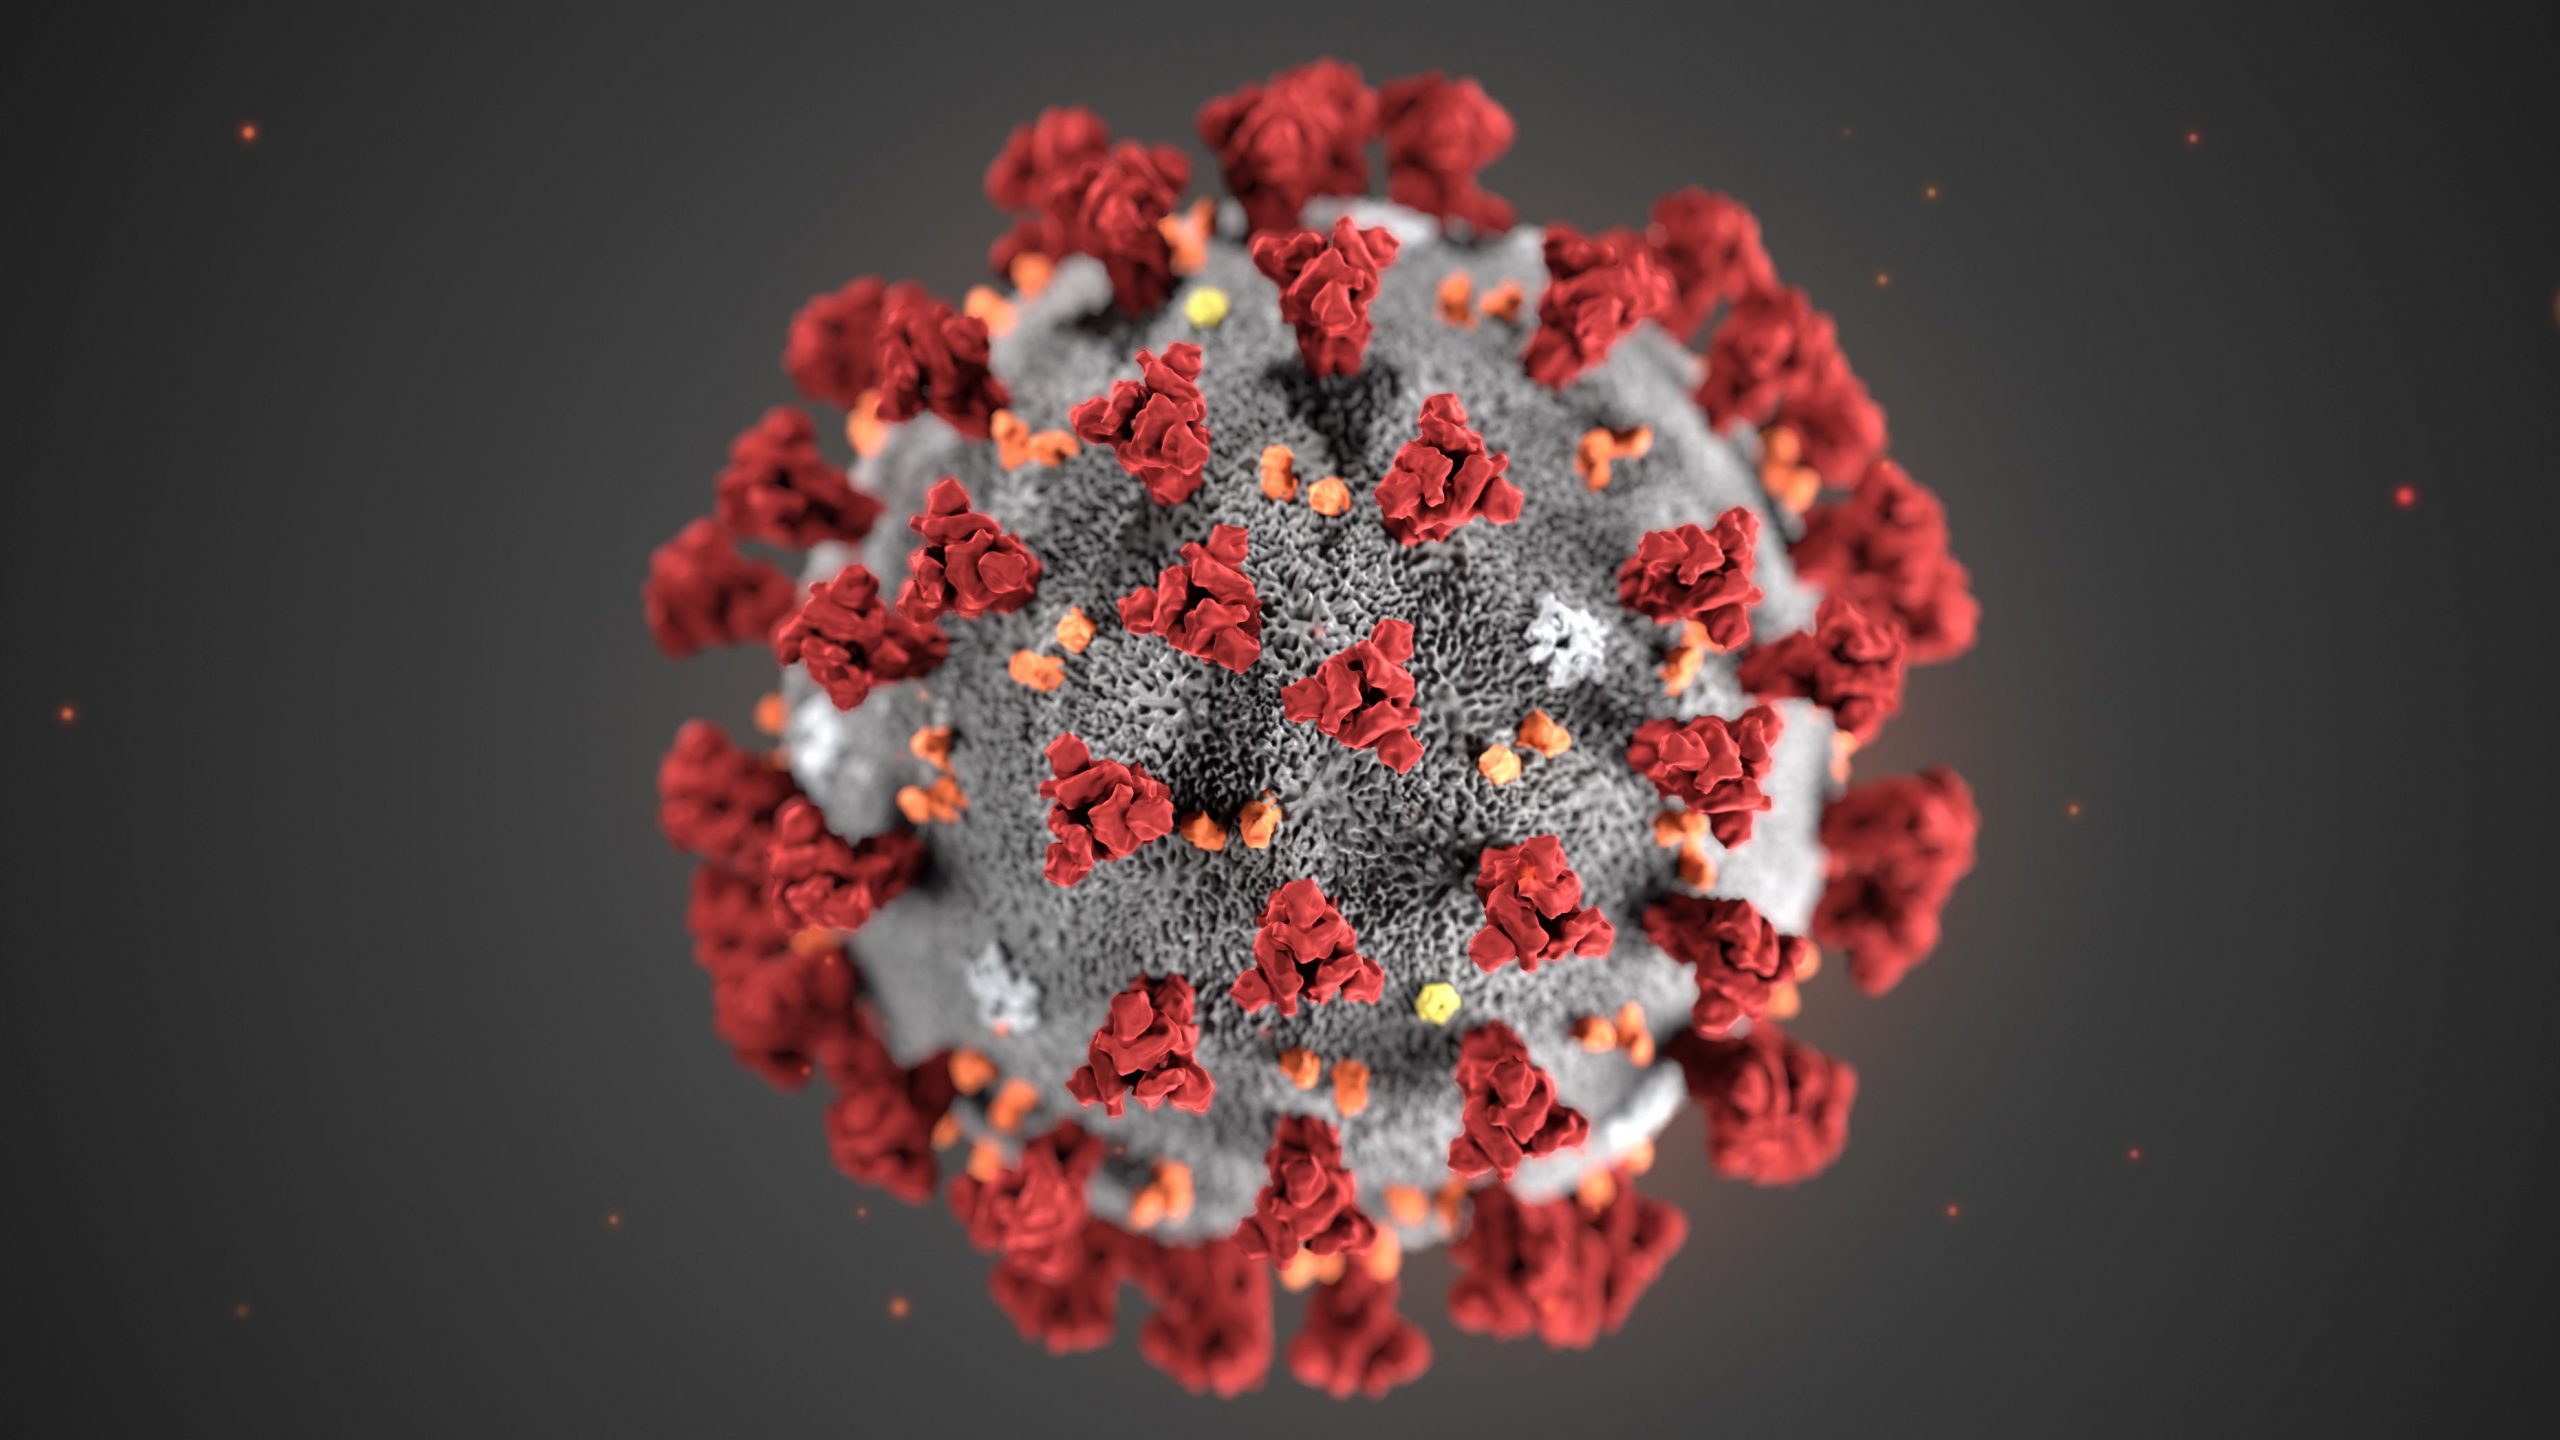 Florida ve más de 2,600 nuevos casos de coronavirus